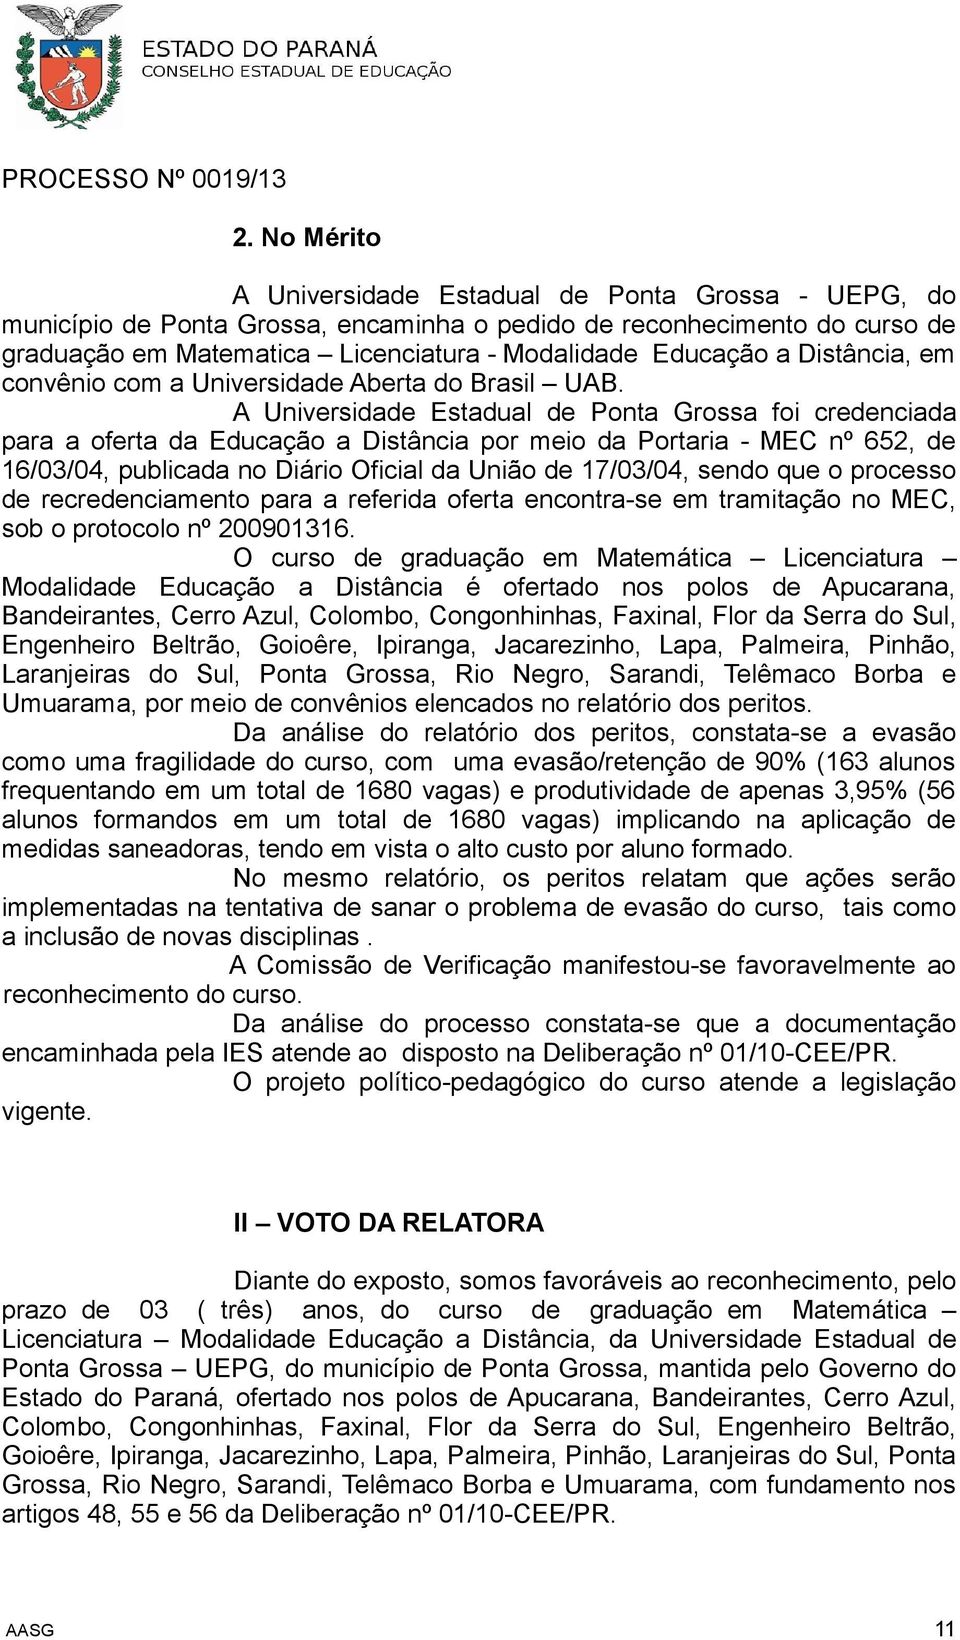 A Universidade Estadual de Ponta Grossa foi credenciada para a oferta da Educação a Distância por meio da Portaria - MEC nº 652, de 16/03/04, publicada no Diário Oficial da União de 17/03/04, sendo